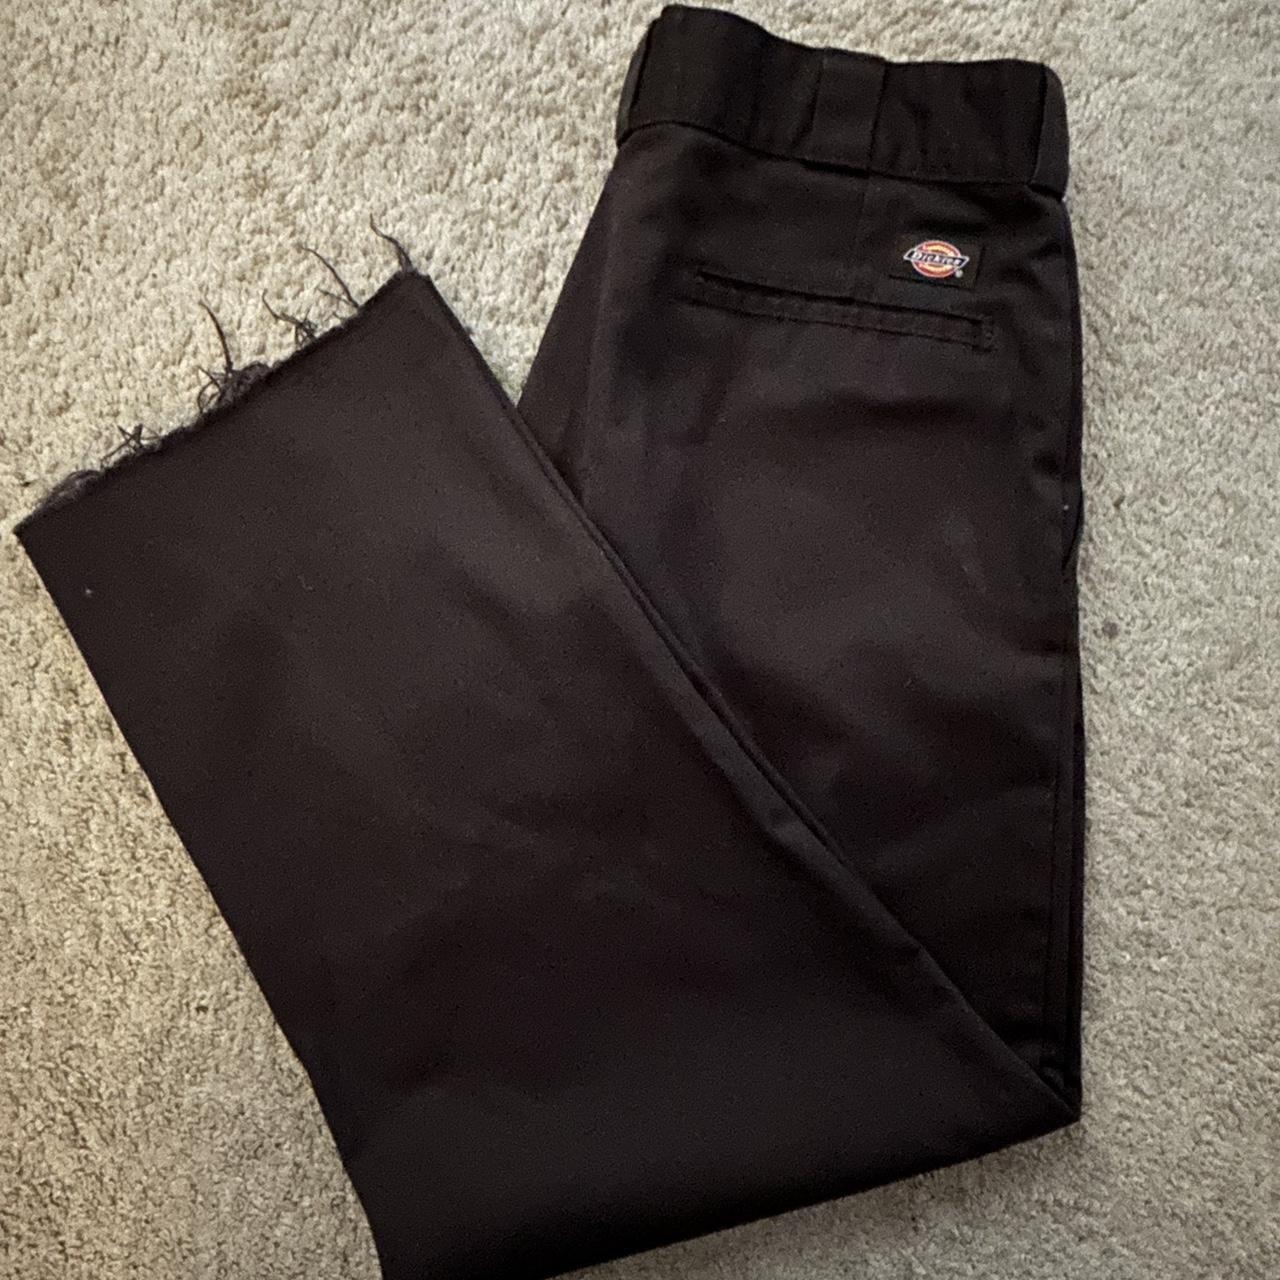 Brown Dickies cutoff work pants 🤎 -no size listed,... - Depop